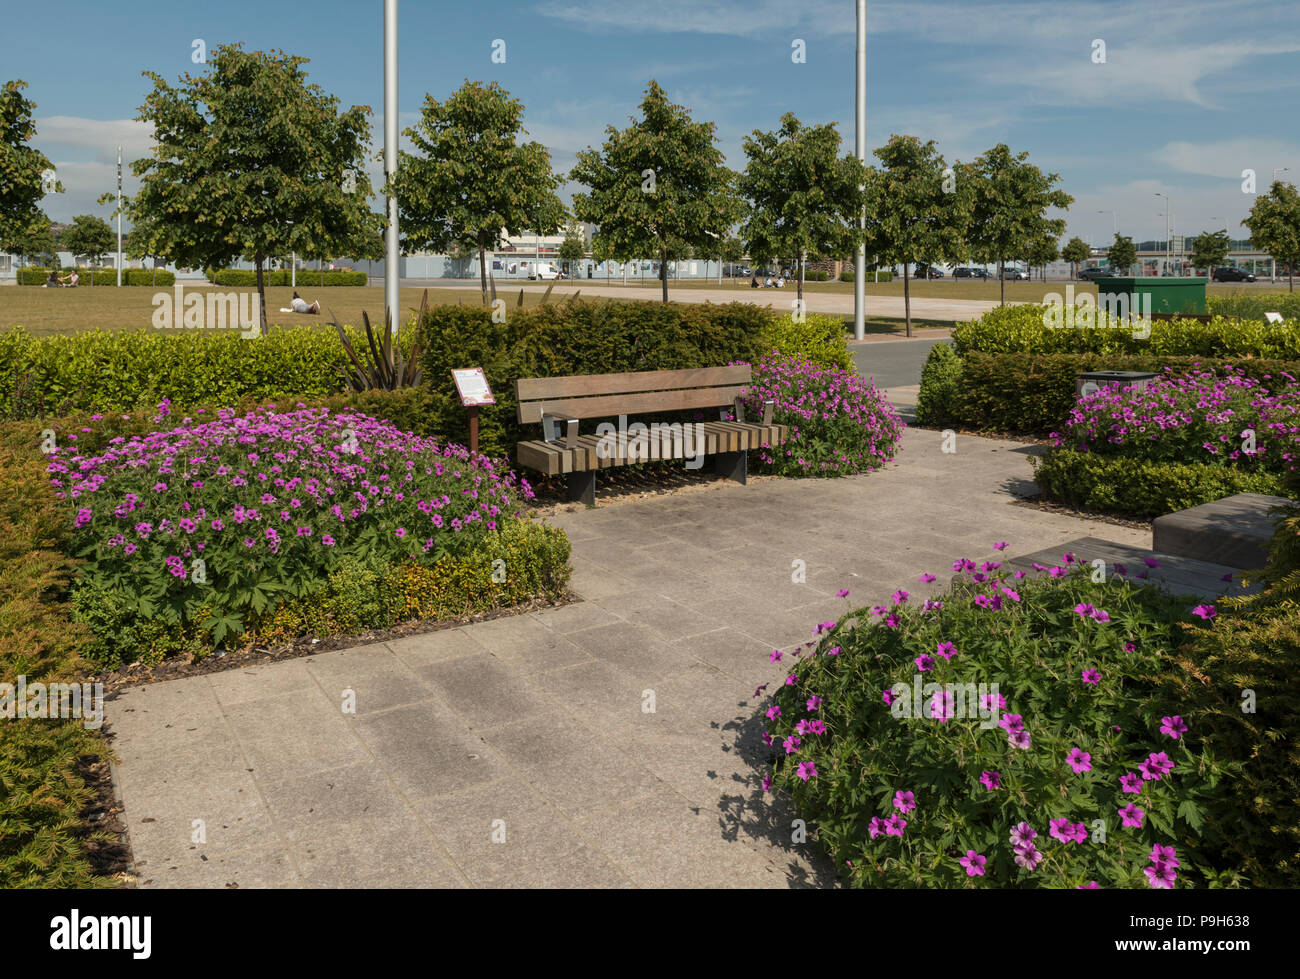 Die Asien Verbindungen Garten in Slessor Gärten, Teil von Dundee Waterfront Development, Highlights historischen Handelsbeziehungen von Dundee, Schottland, Großbritannien. Stockfoto